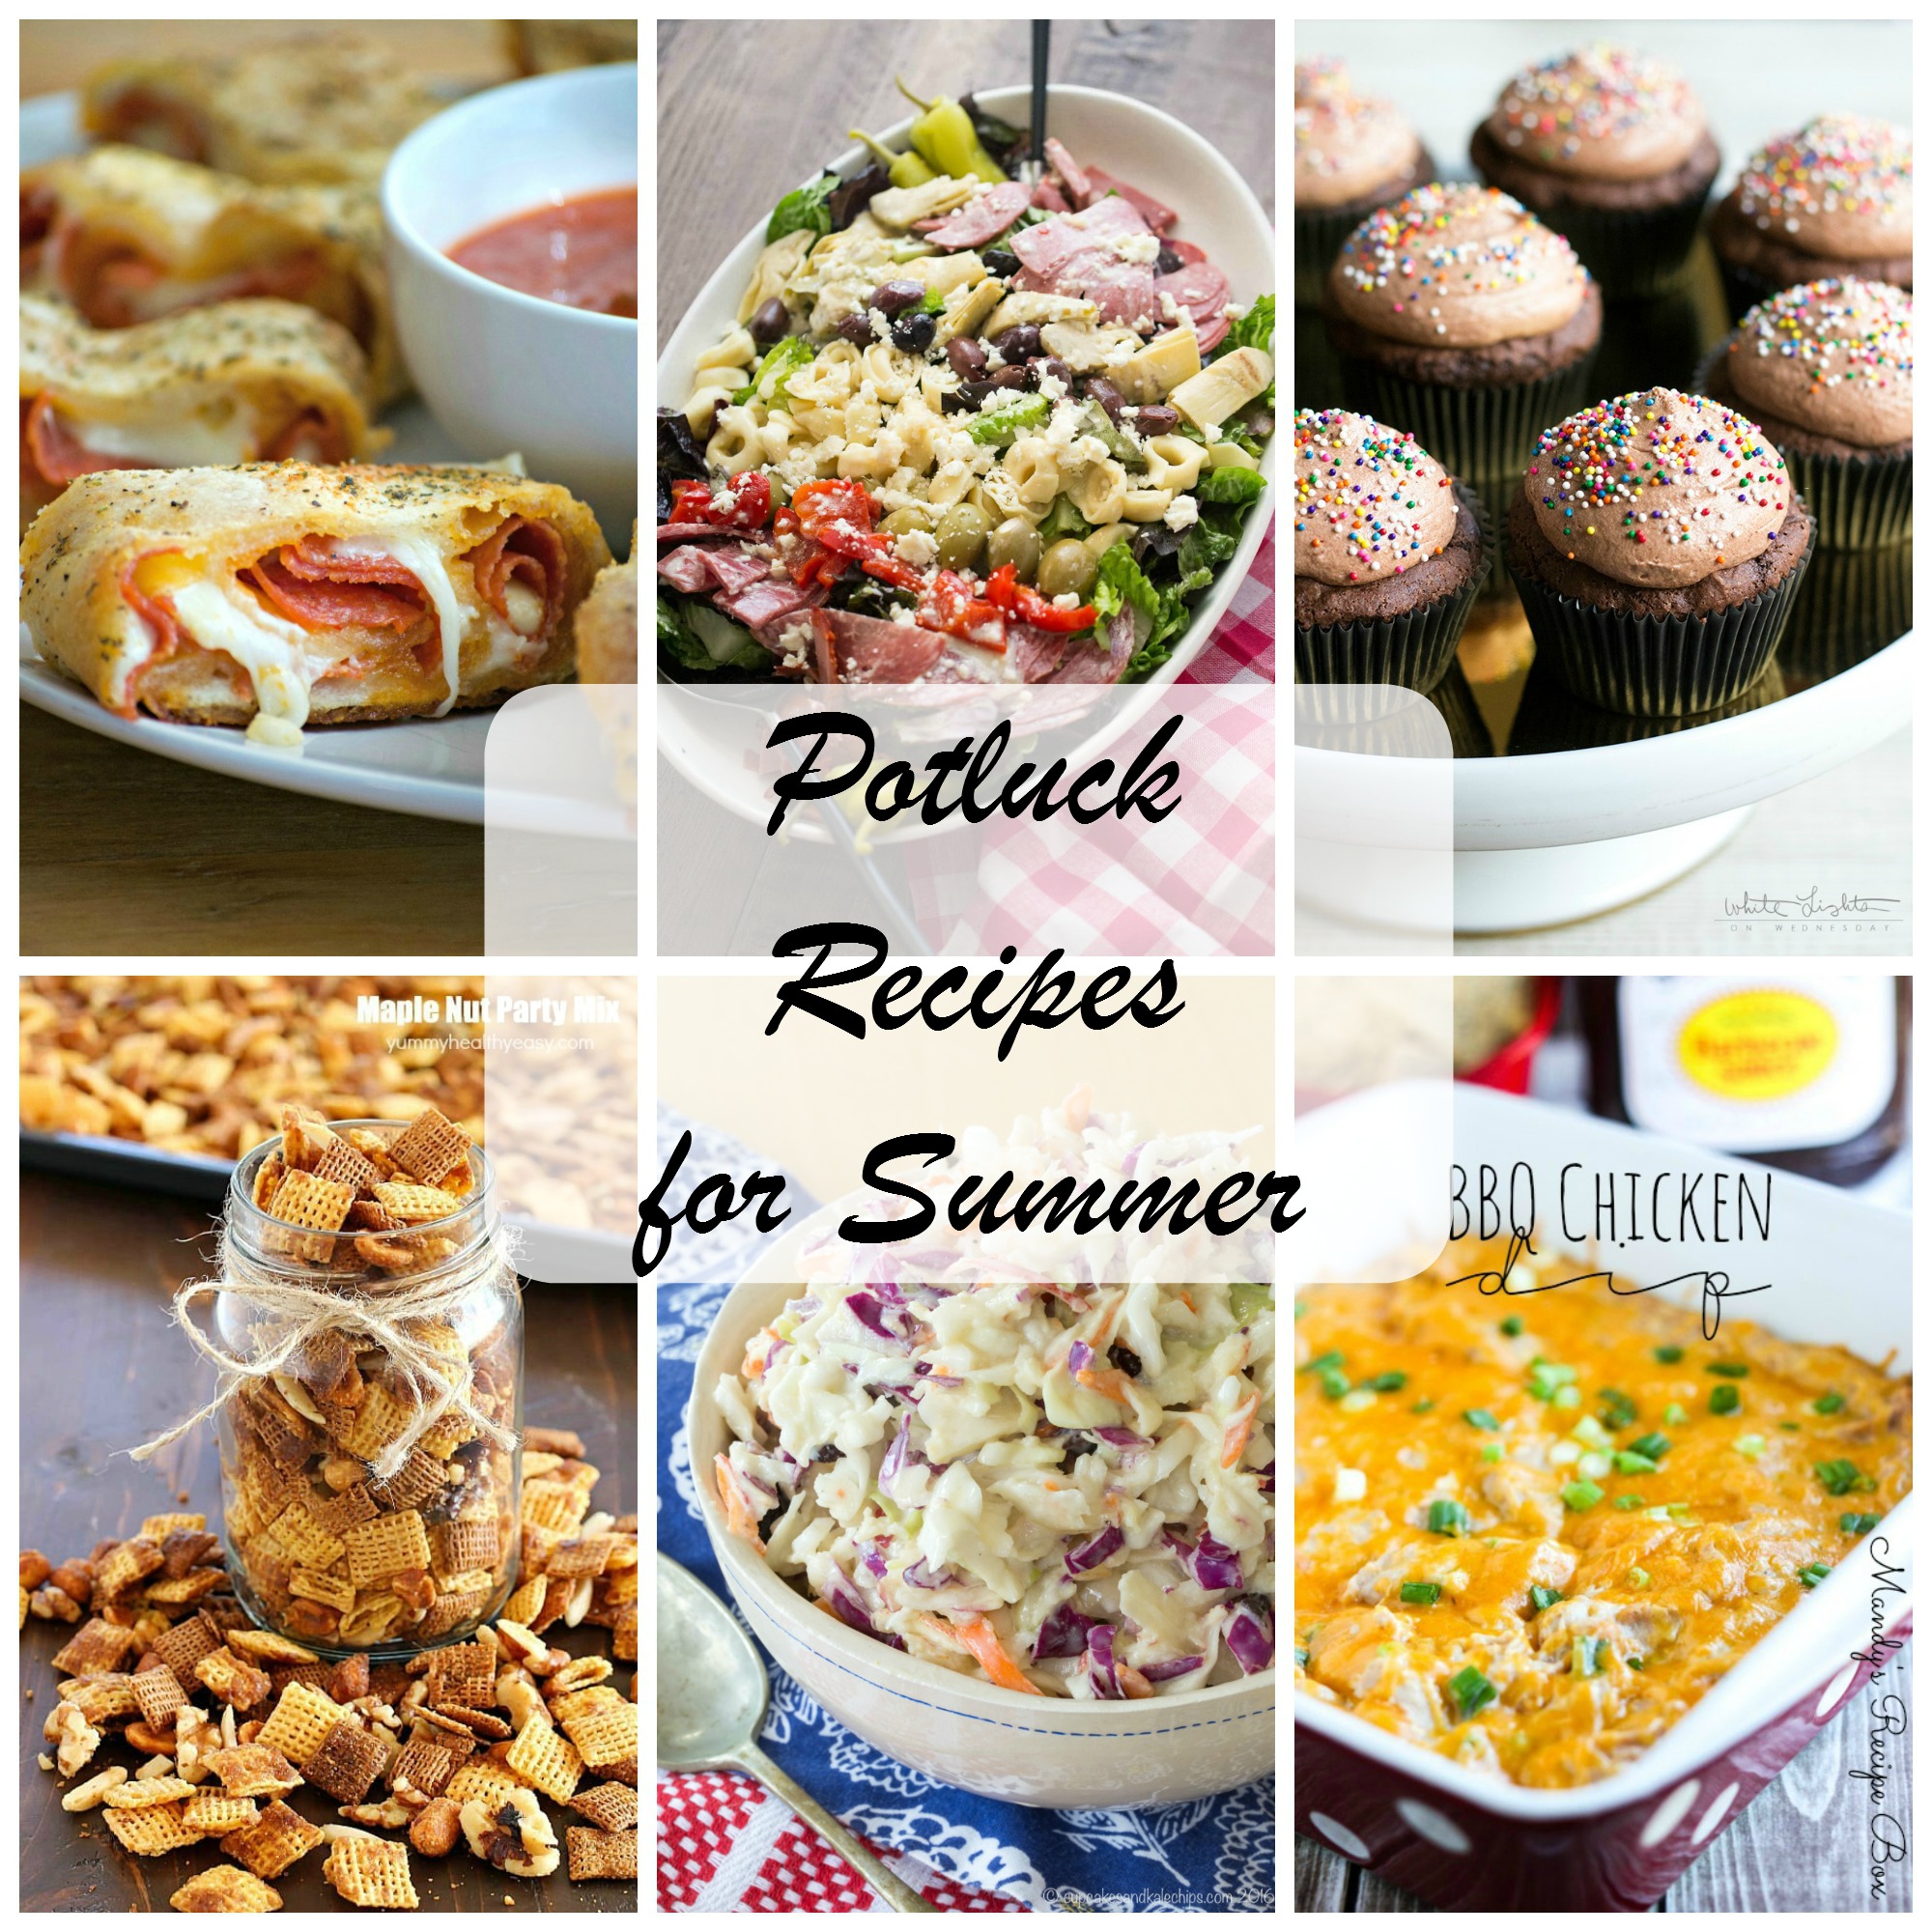 Potluck Recipes for Summer